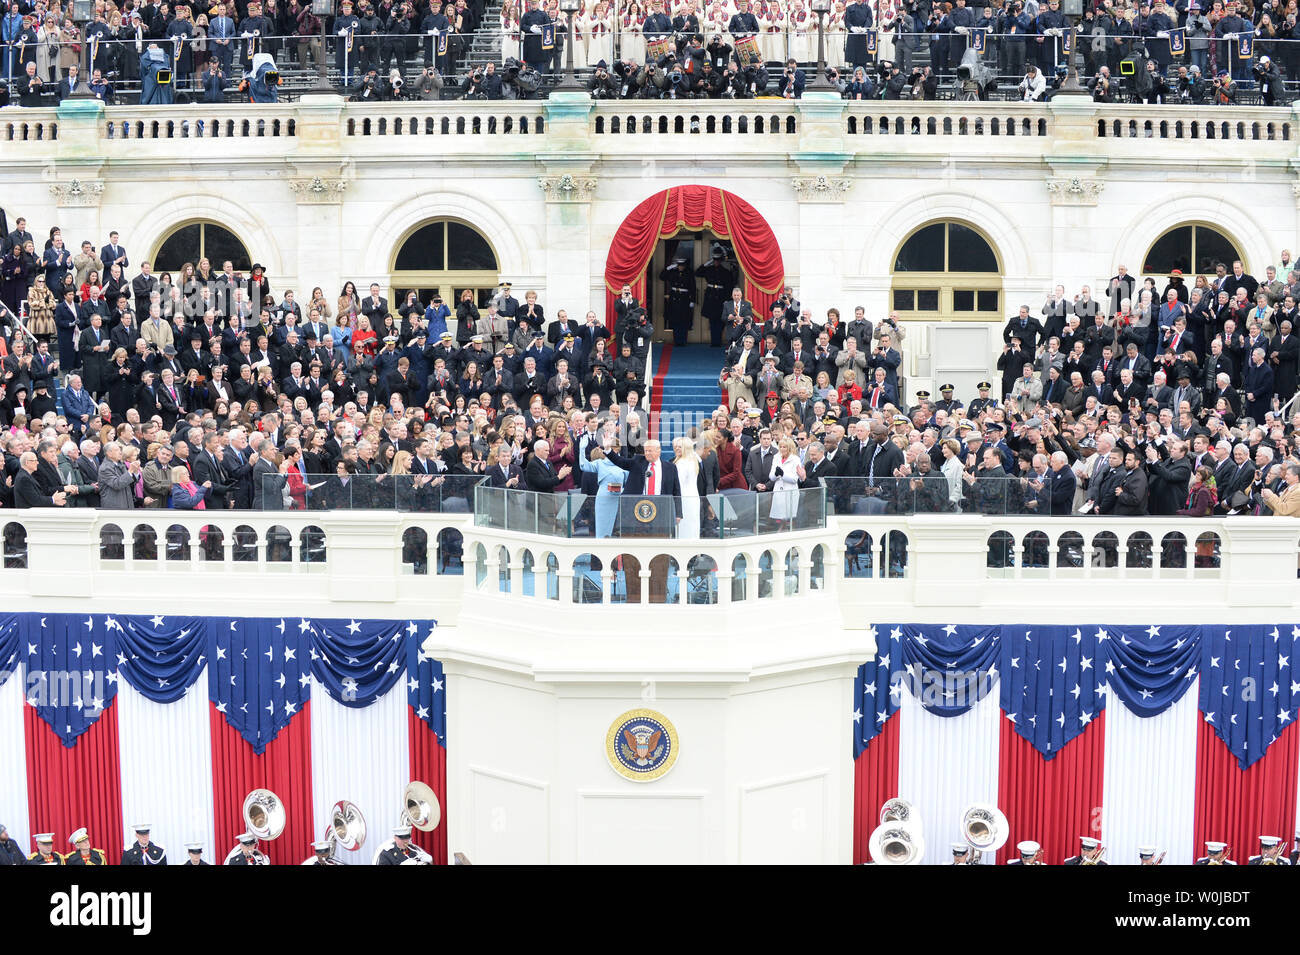 Präsident Donald Trump Wellen nach der Eidesleistung bei der Einweihung am 20 Januar, 2017 in Washington, D.C. Trump wurde der 45. Präsident der Vereinigten Staaten. Foto von Pat Benic/UPI Stockfoto